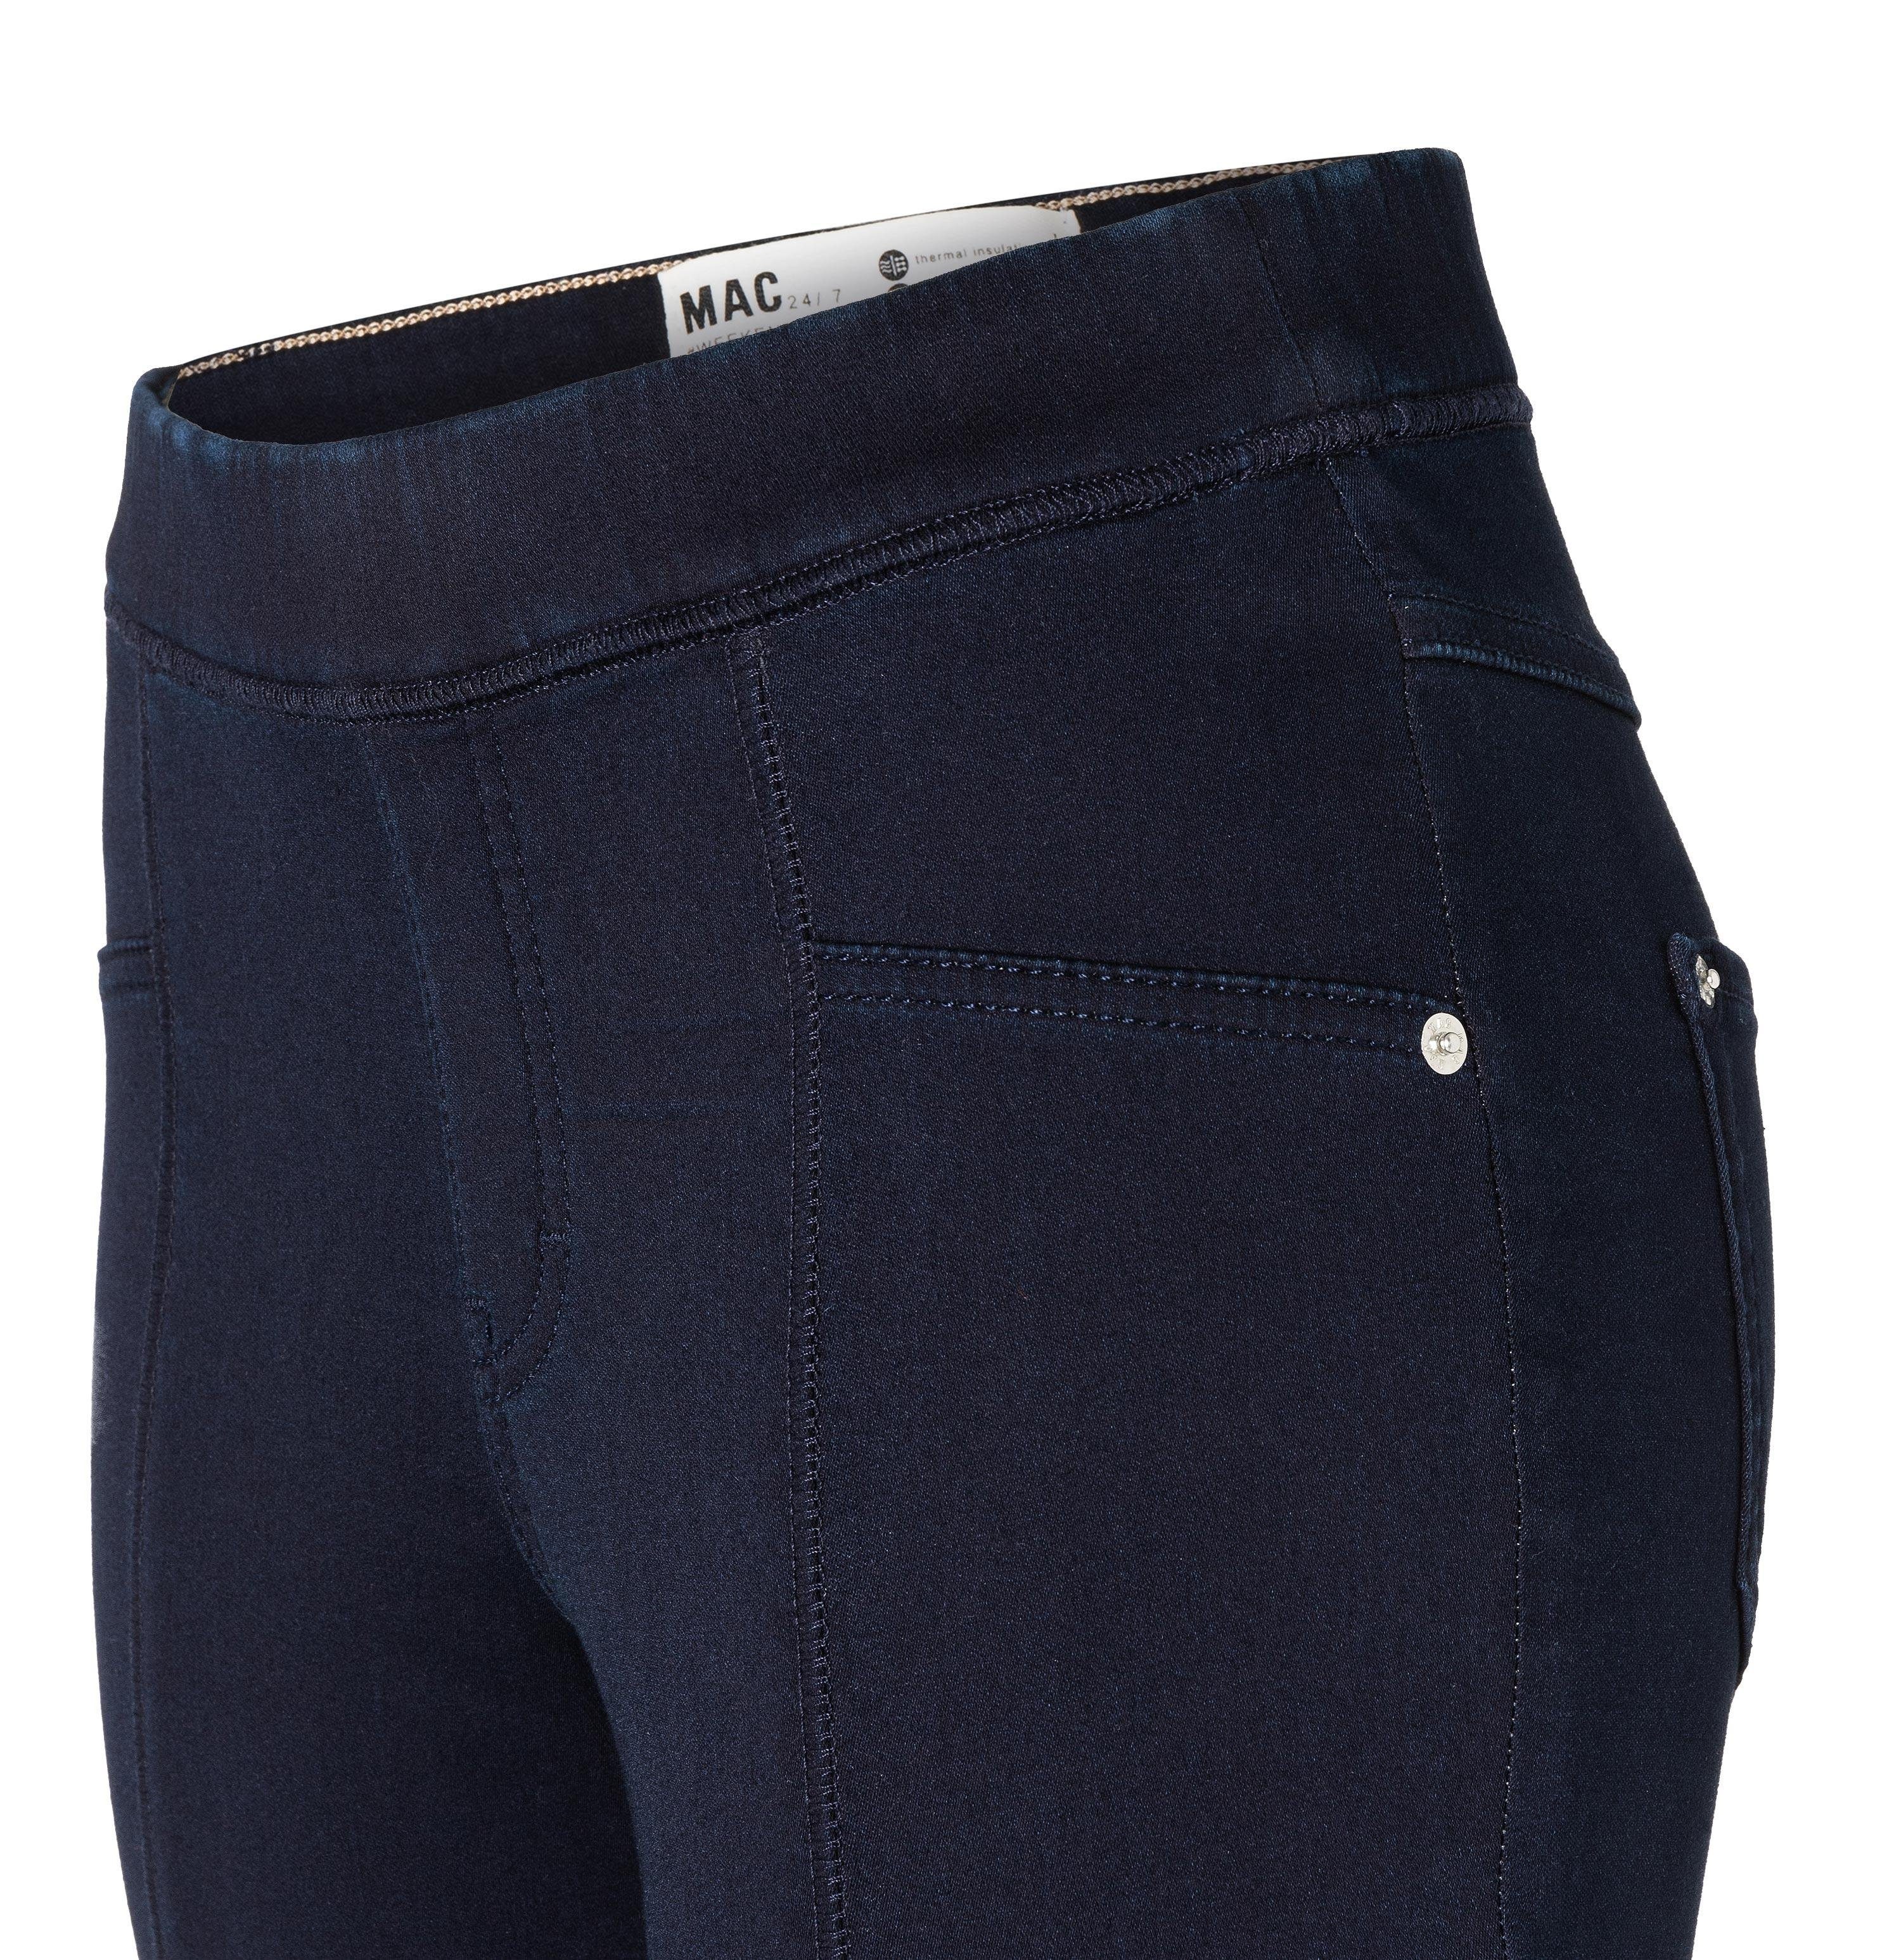 more ISKO™ than - LEGGINGS DENIM SOFT MAC Stretch-Jeans D802 MAC rinsewash 5907-90-0350